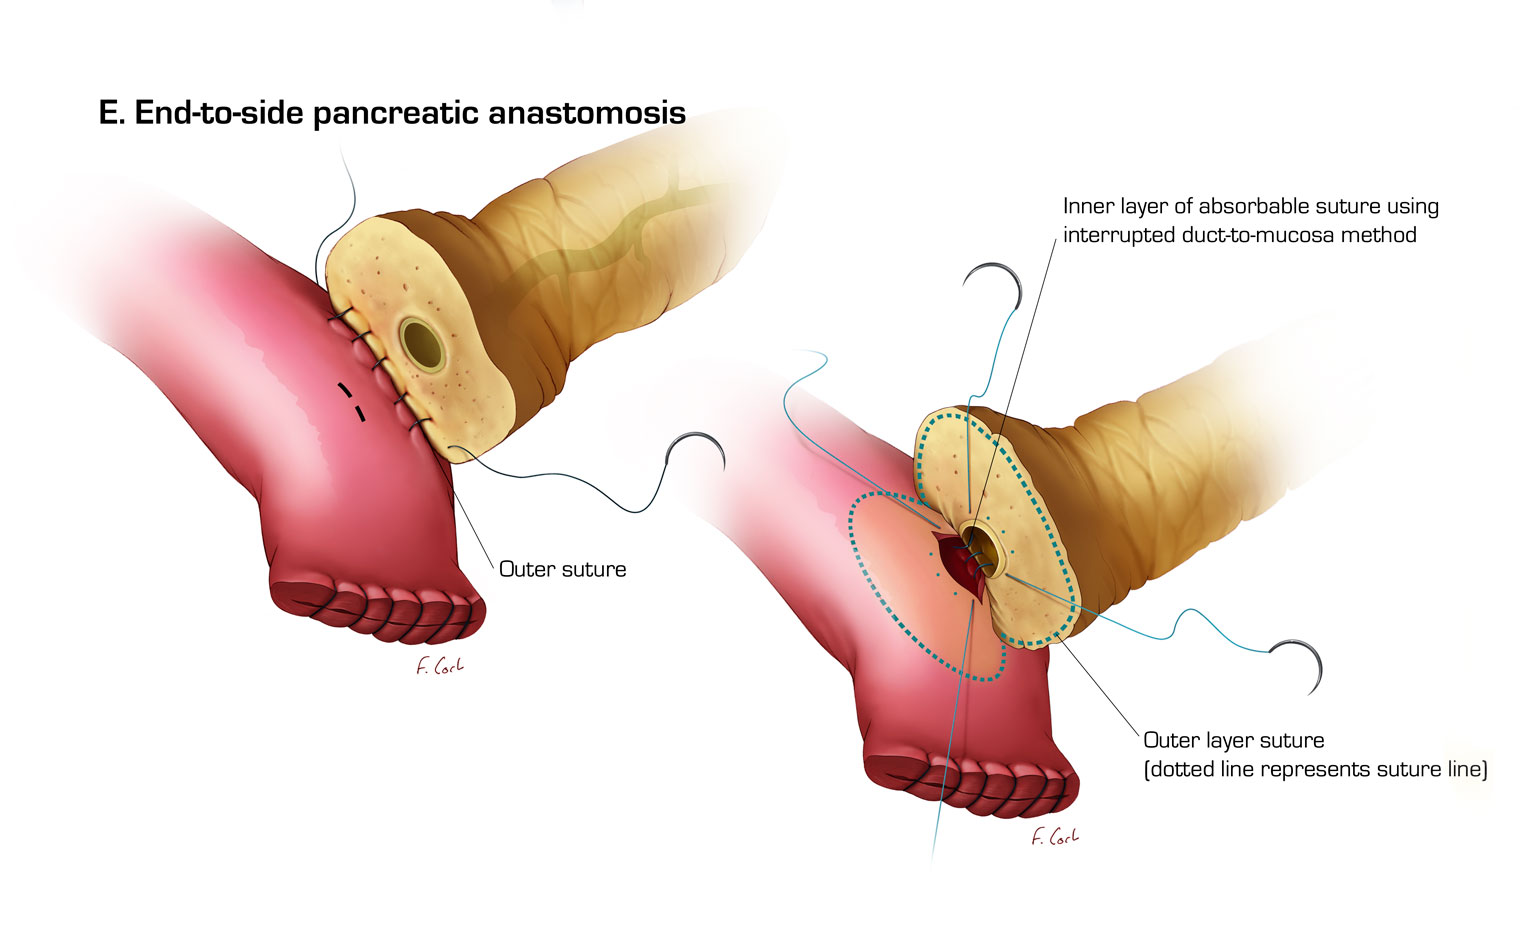 End-to-side pancreatic anastomosis